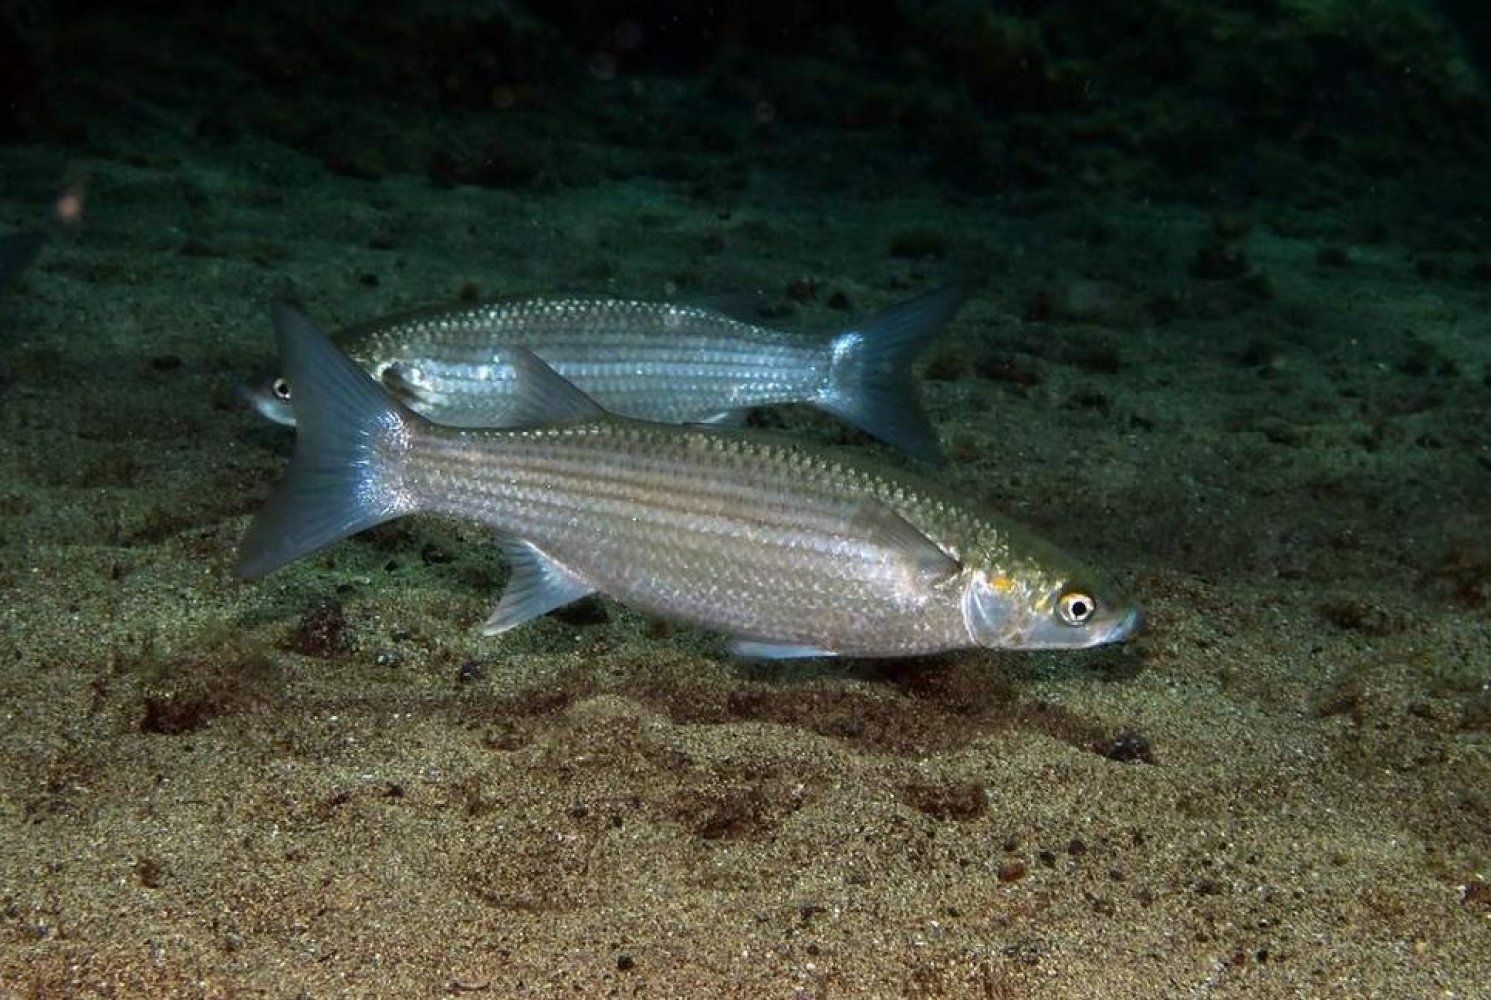 Горбыль серый фото и описание – каталог рыб, смотреть онлайн